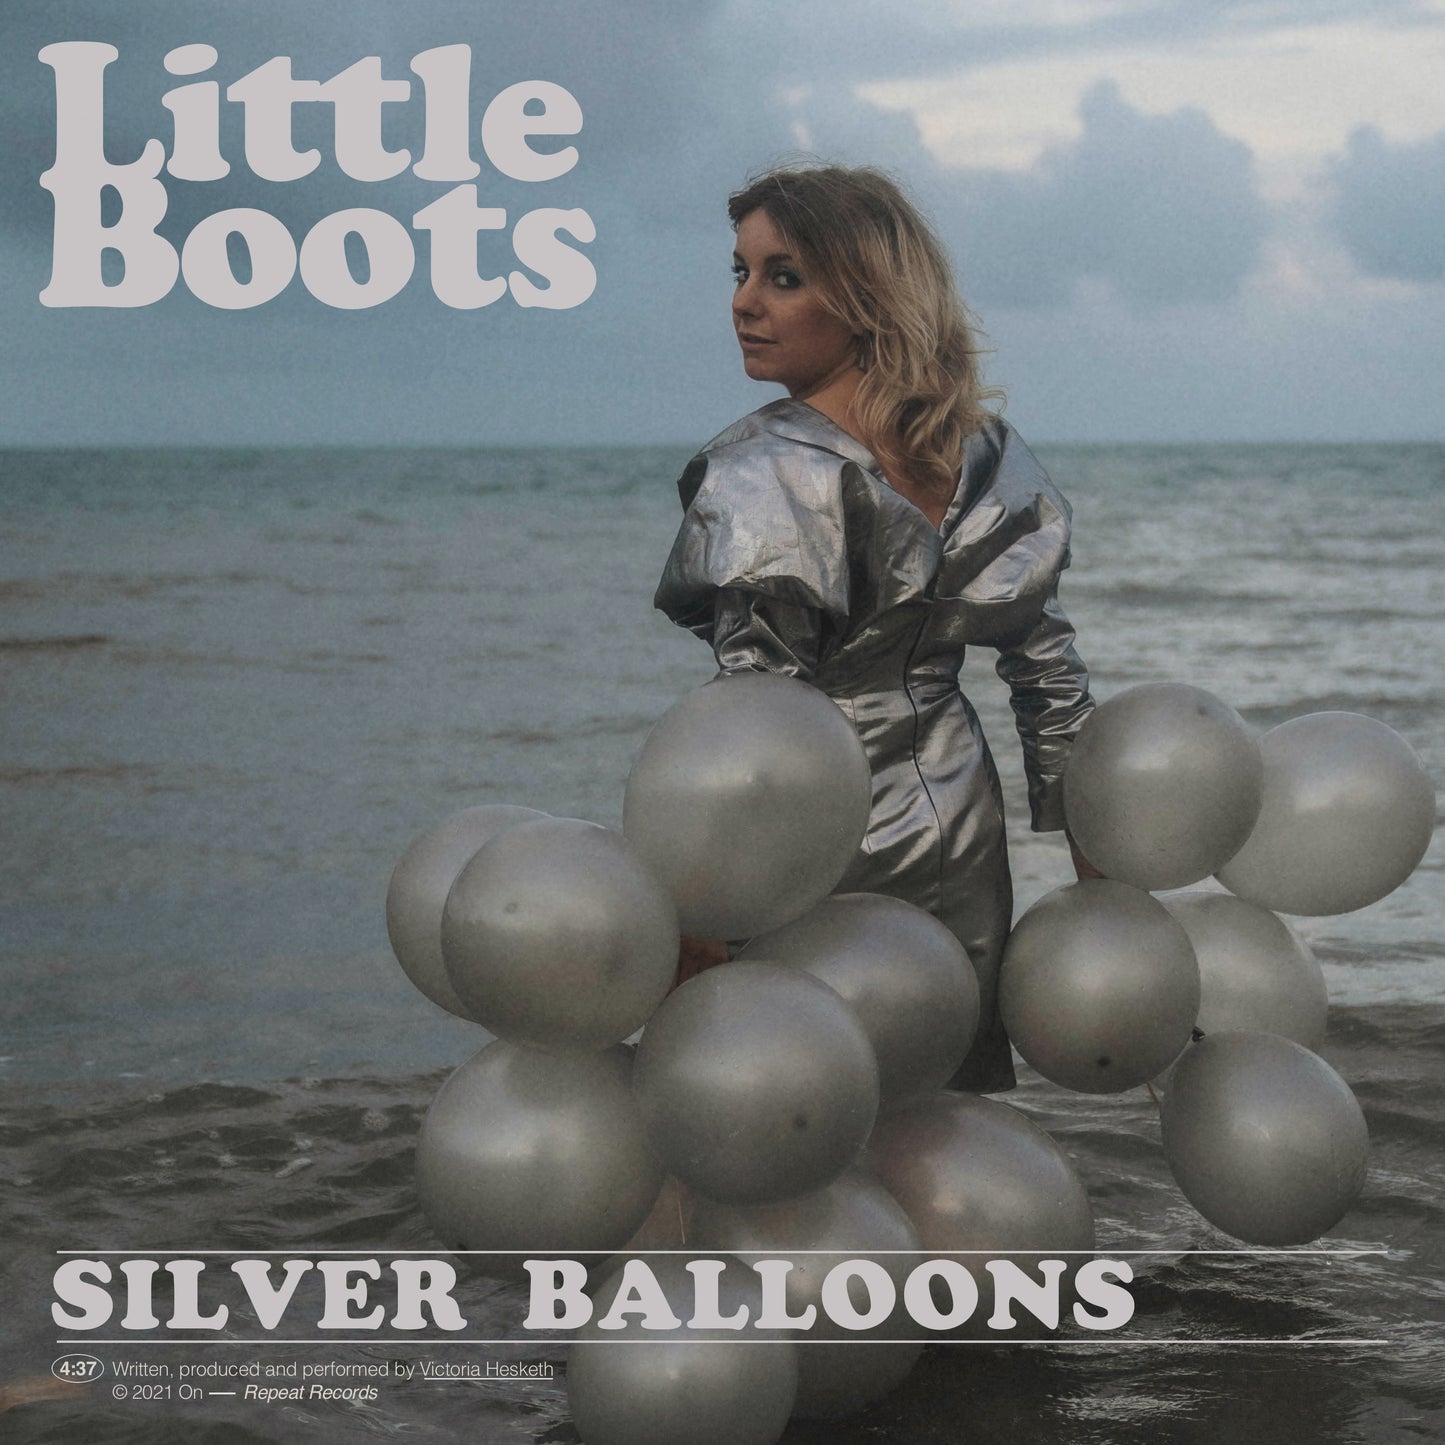 Silver Balloons Promo CD